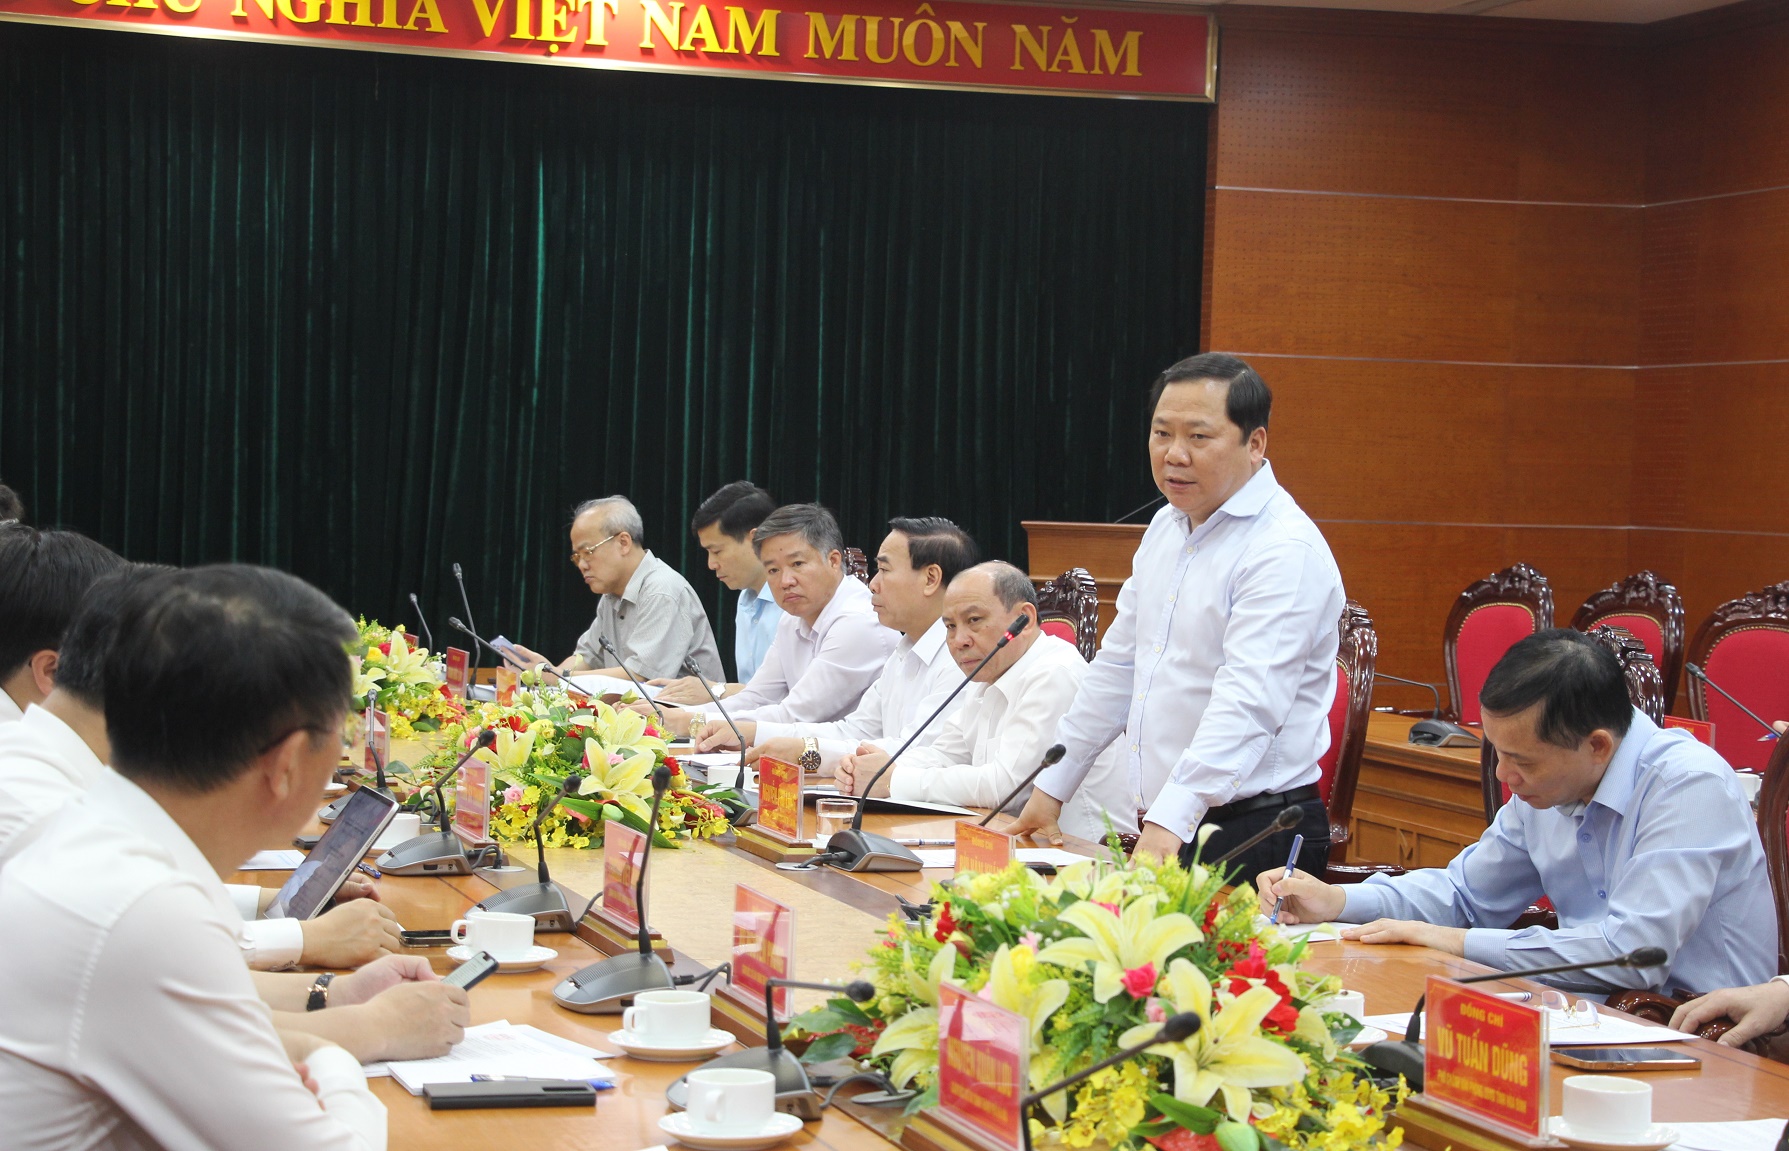 Đồng chí Nguyễn Phi Long, Bí thư Tỉnh ủy nhấn mạnh những kết quả trong công tác phối hợp giữa hai địa phương